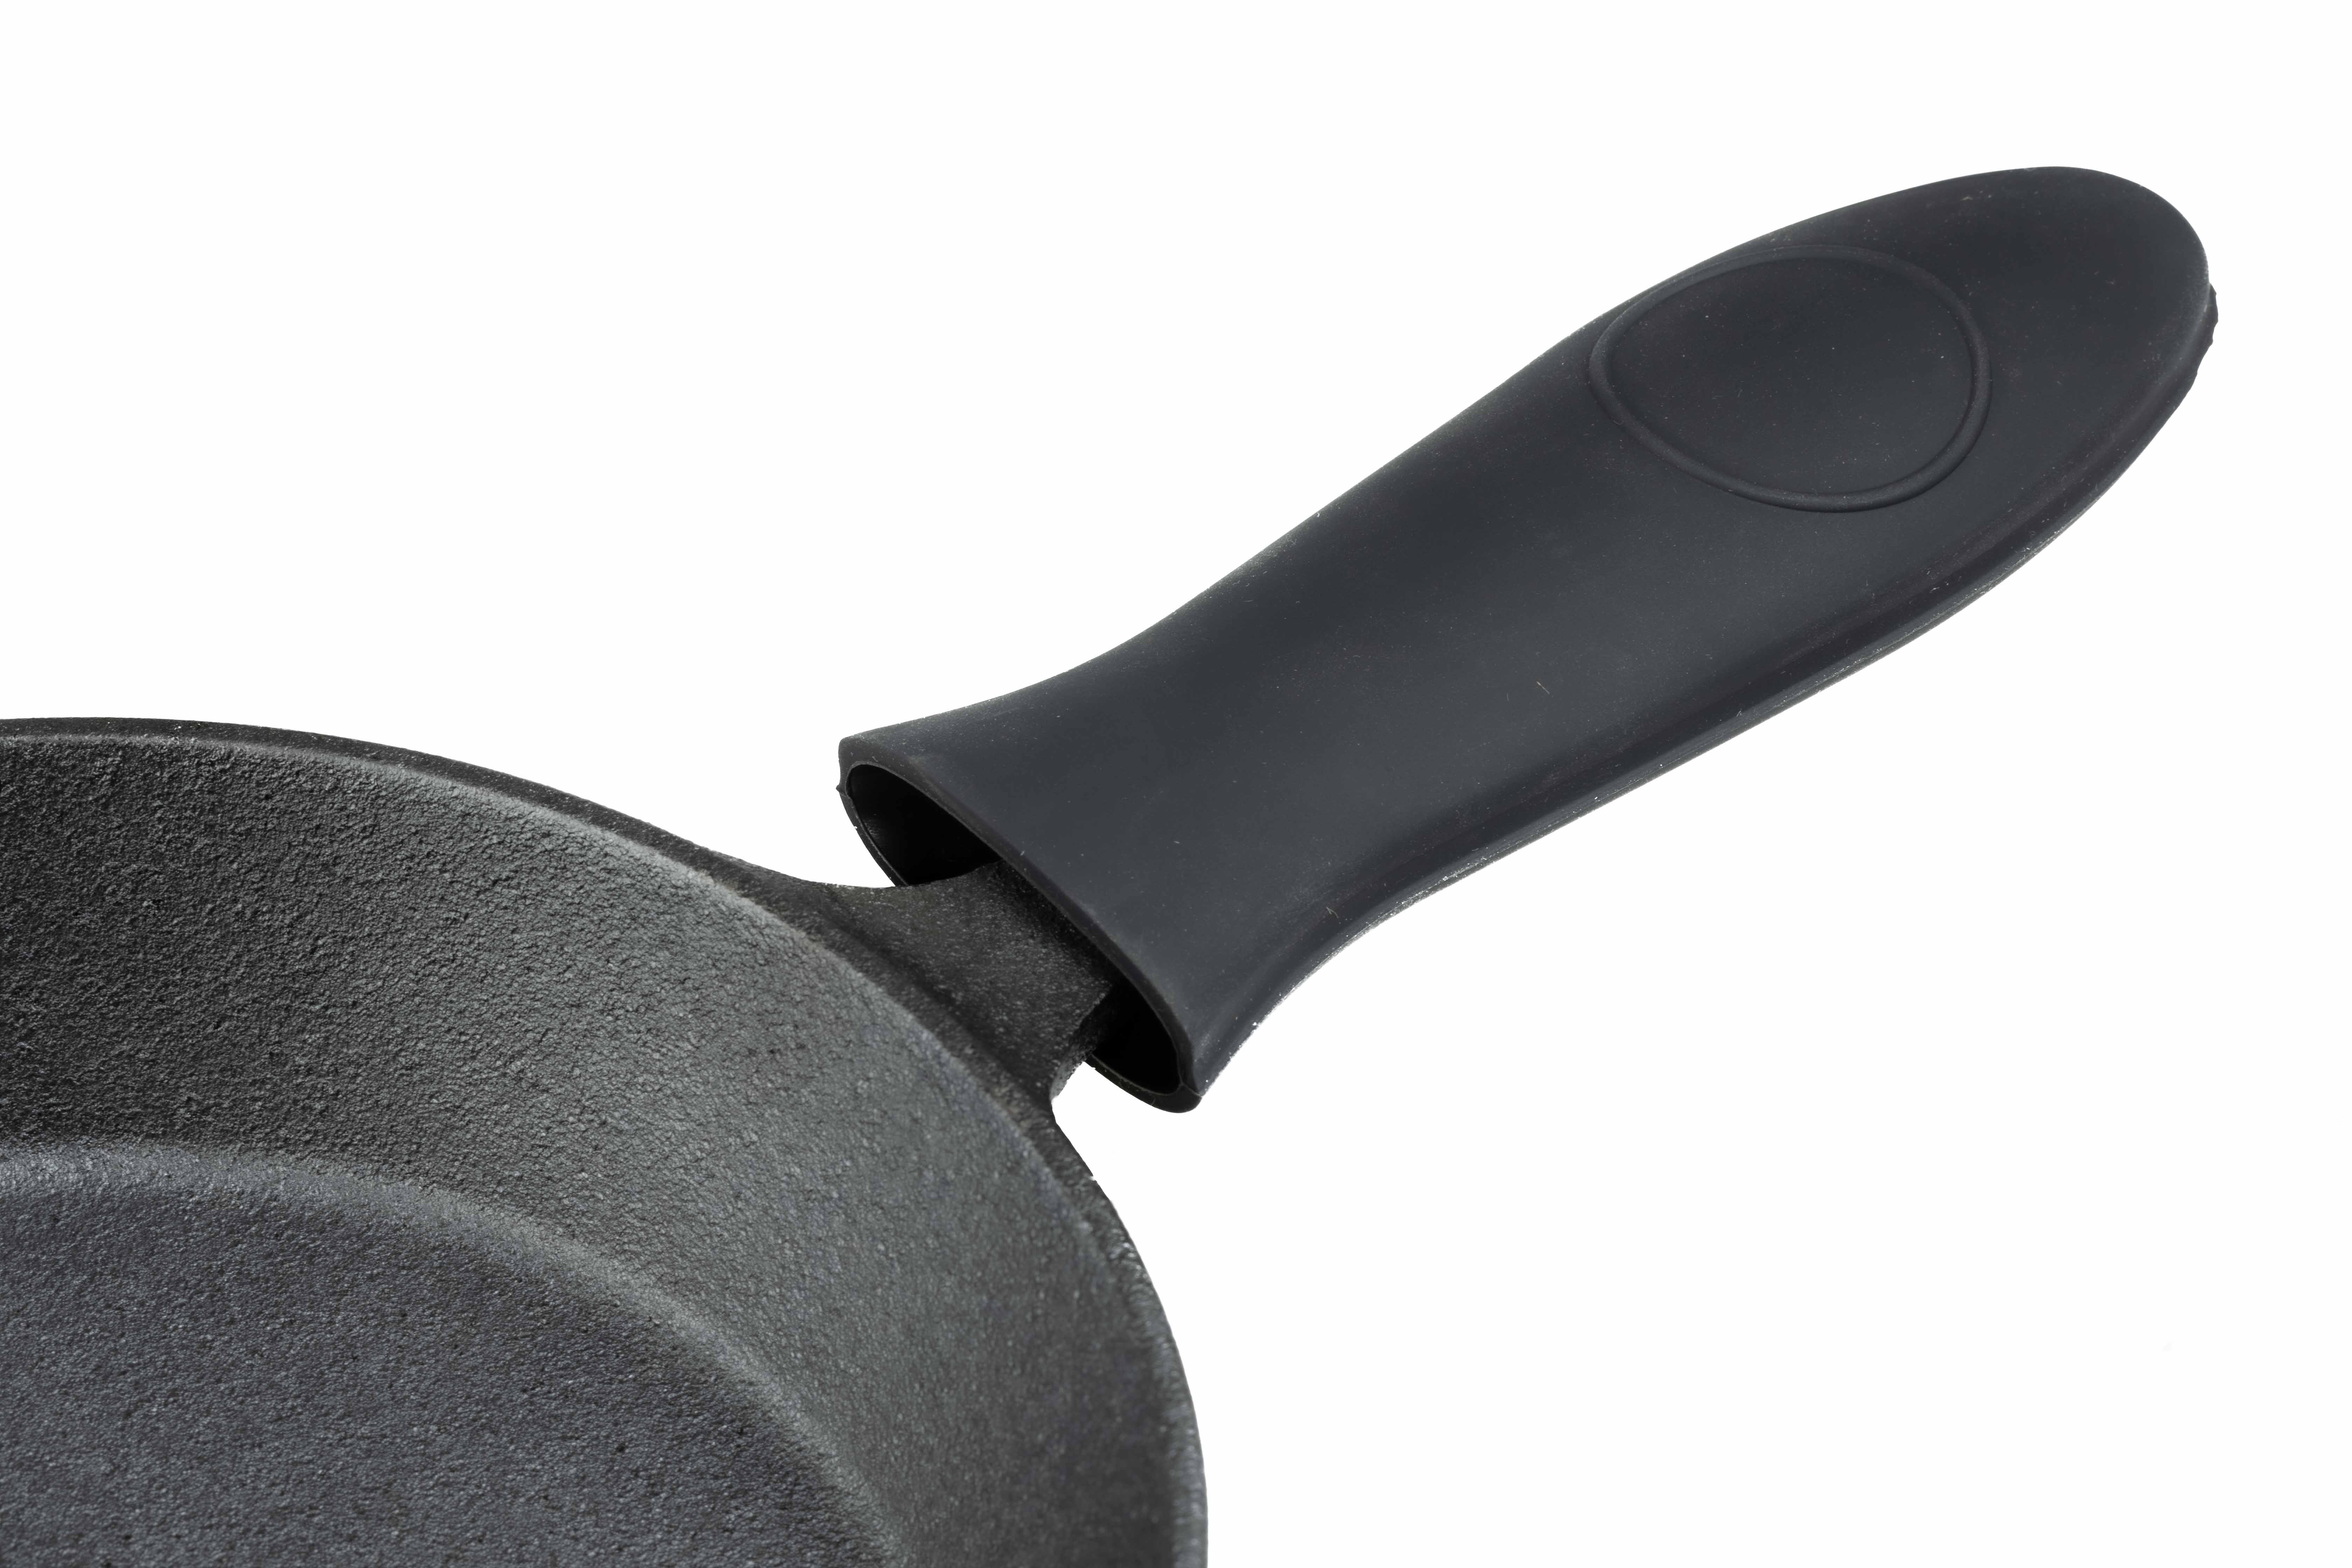 Olla de hierro fundido para hornear pan de 24 cm – 3,5 L, cacerola de hierro  fundido esmaltada para cocer, hornear y freír, con tapa de inducción (3,5  L, azul) : : Hogar y cocina